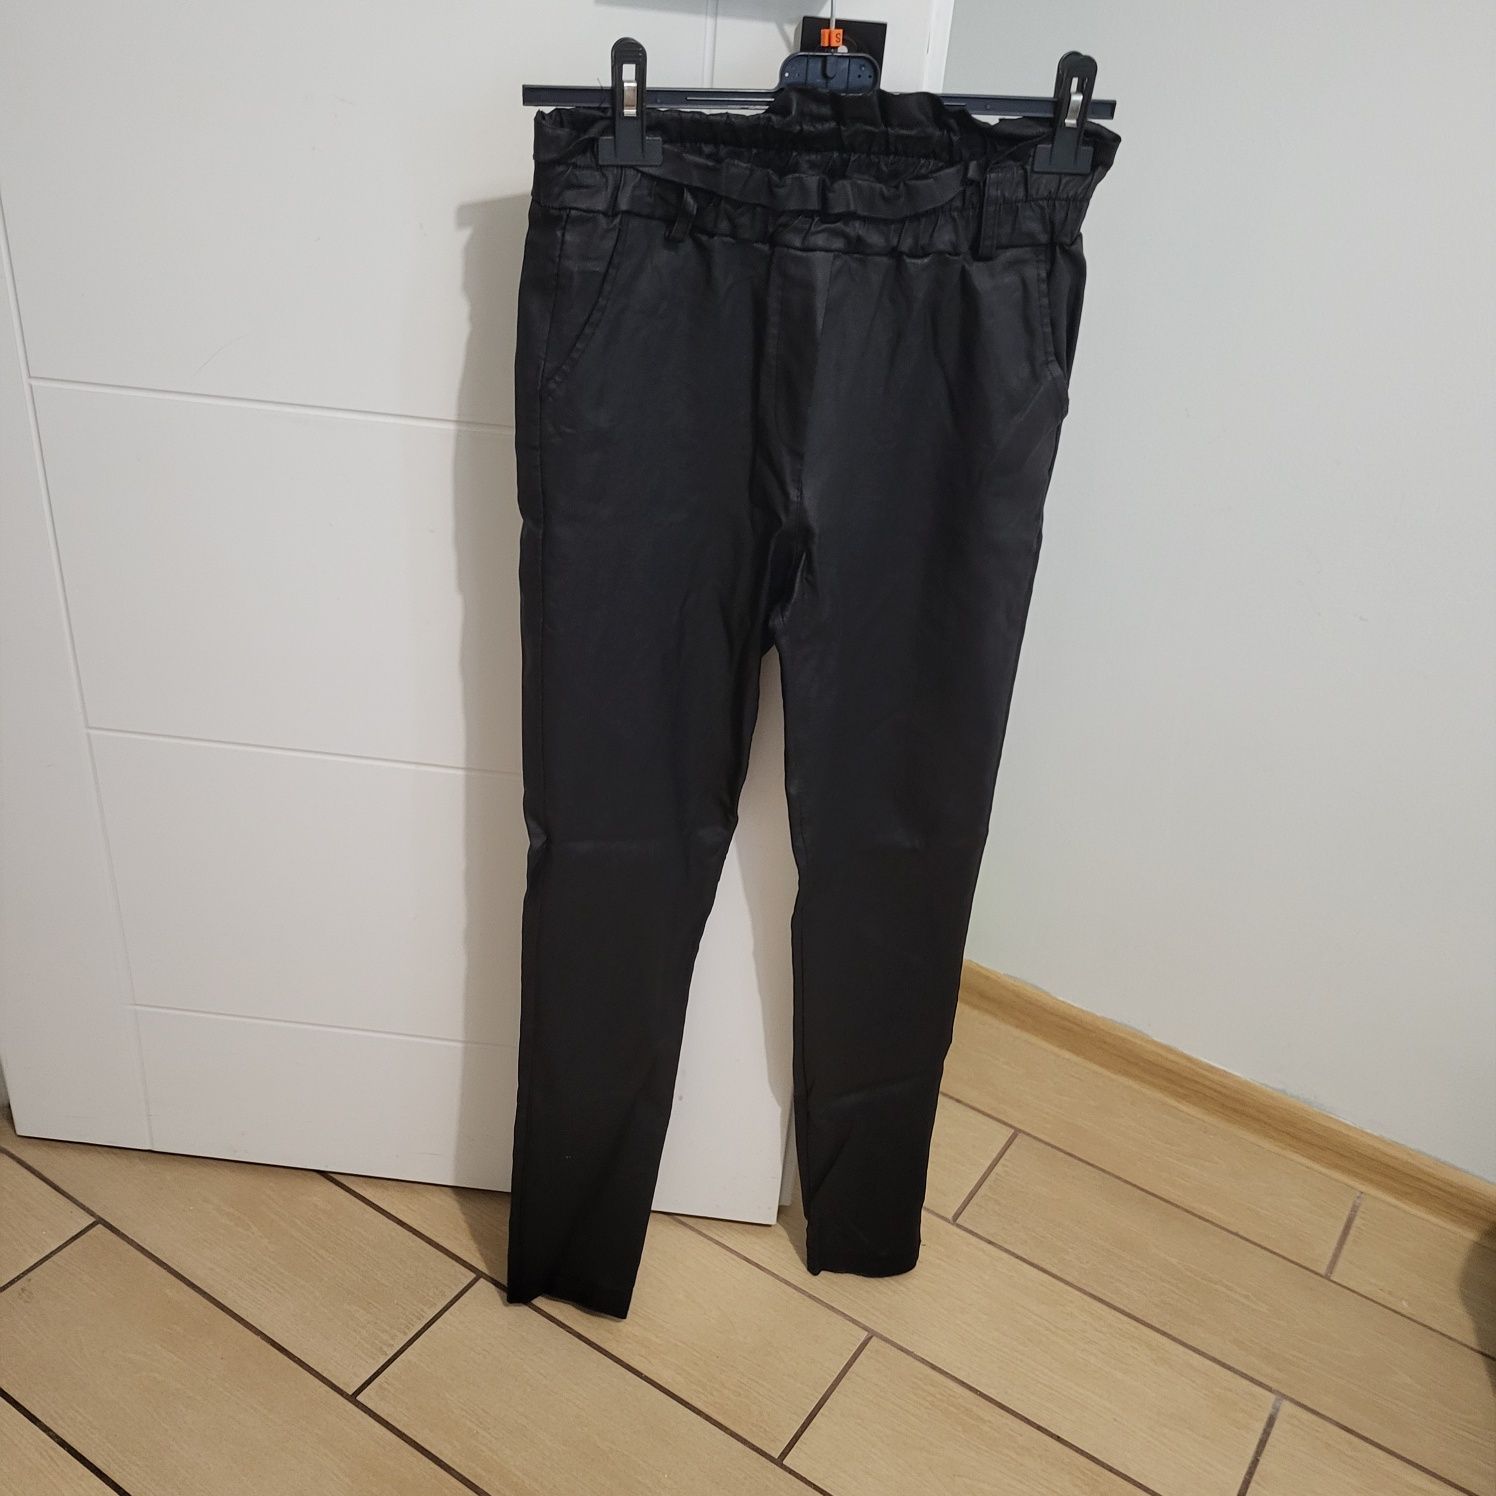 Spodnie damskie lateksowe używane czarne made in italy